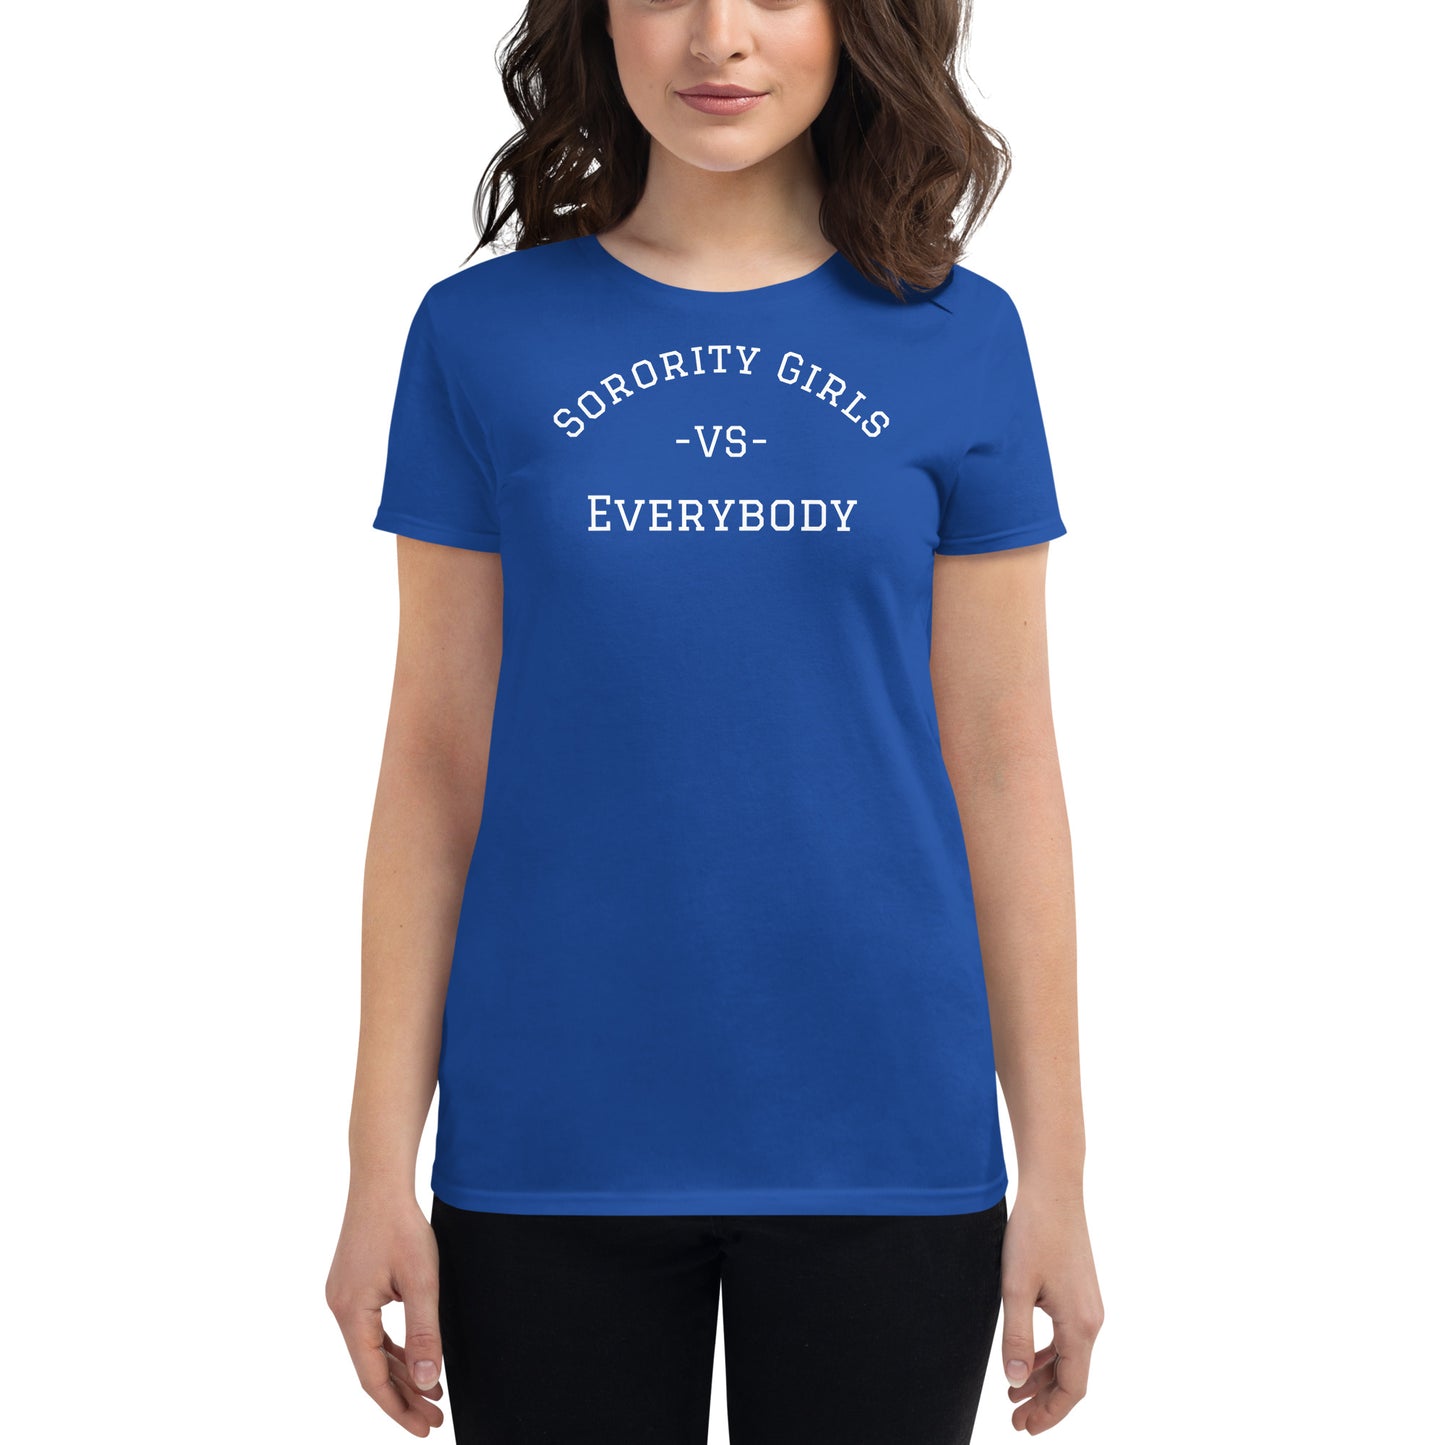 "Sorority Girls VS Everybody" royal blue T-shirt for Women